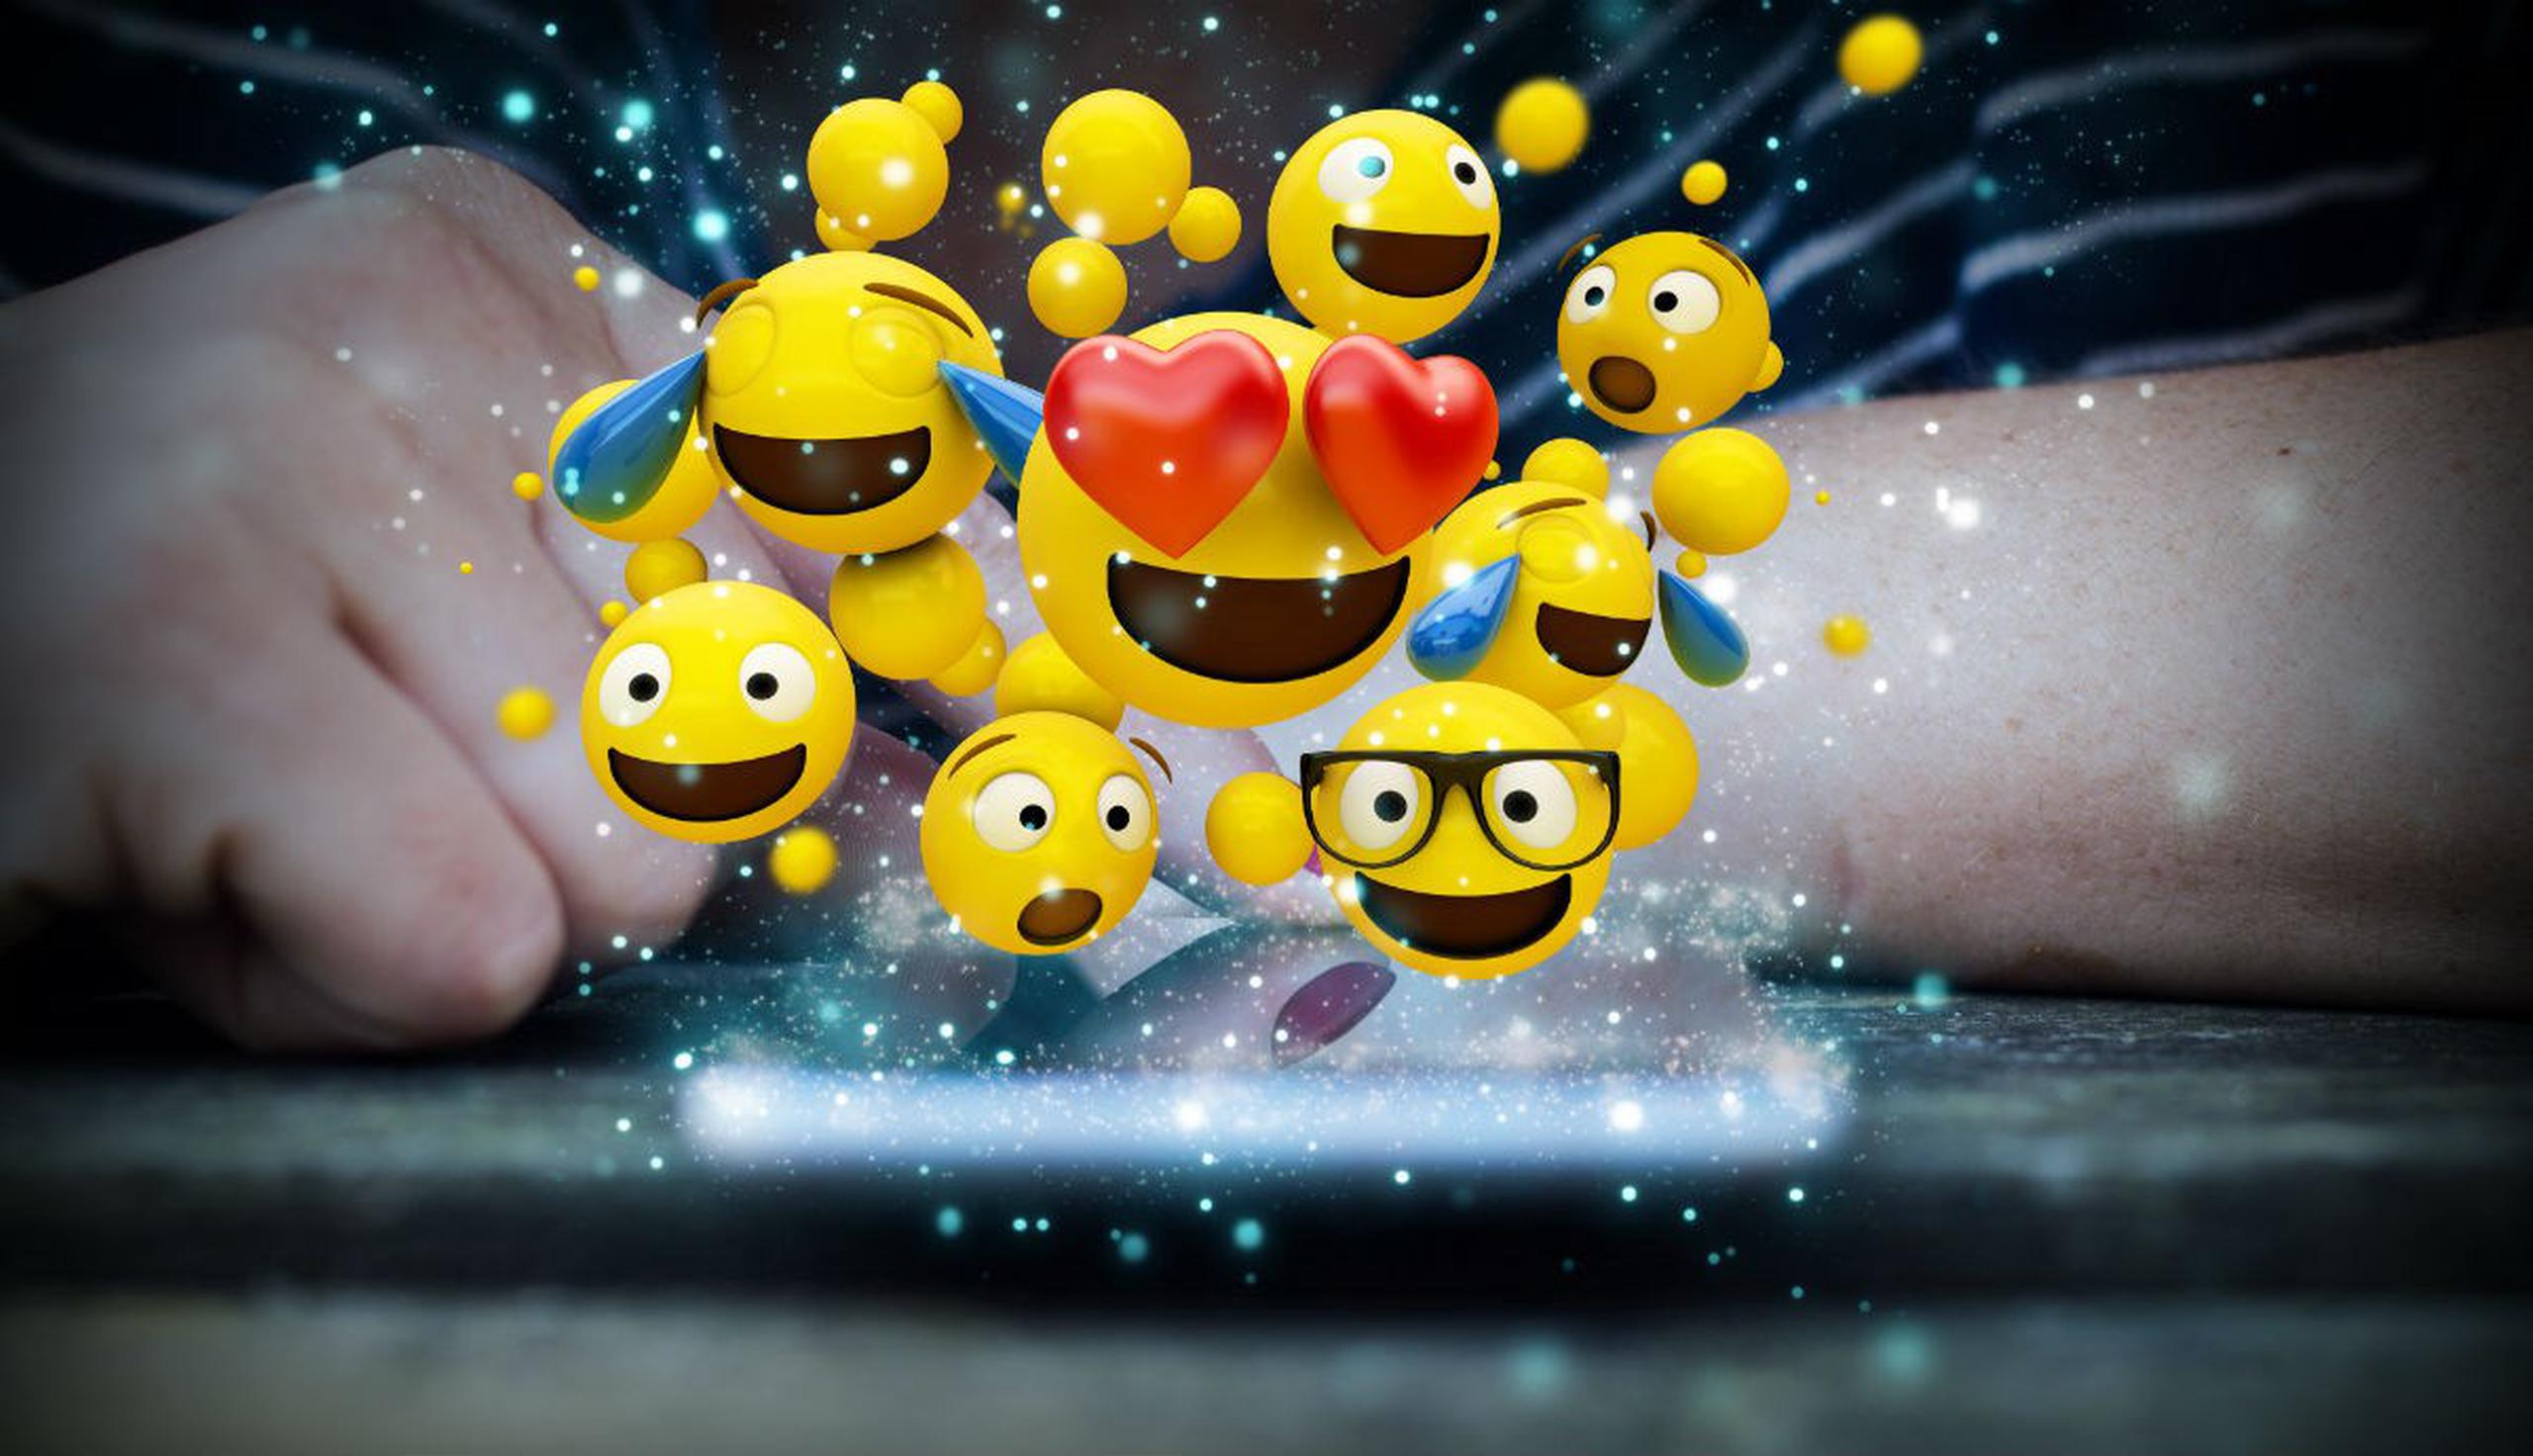 El rostro de alegría y los corazones son de los emojis más utilizados por los usuarios (Shutterstock).